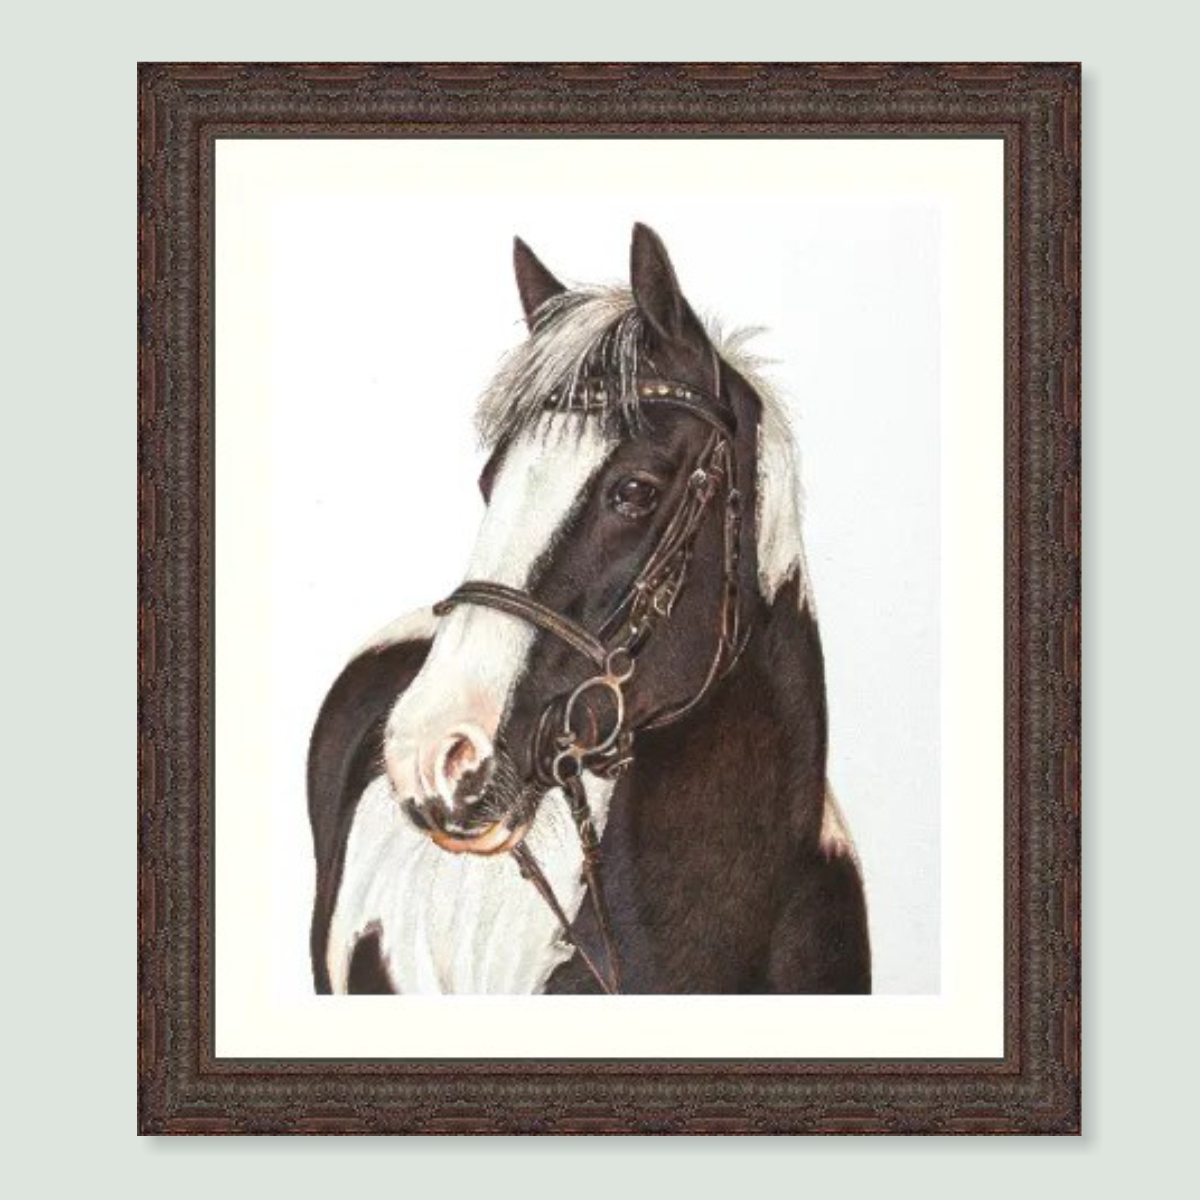 Gem - coloured pencil horse portrait by pet artist Angie.